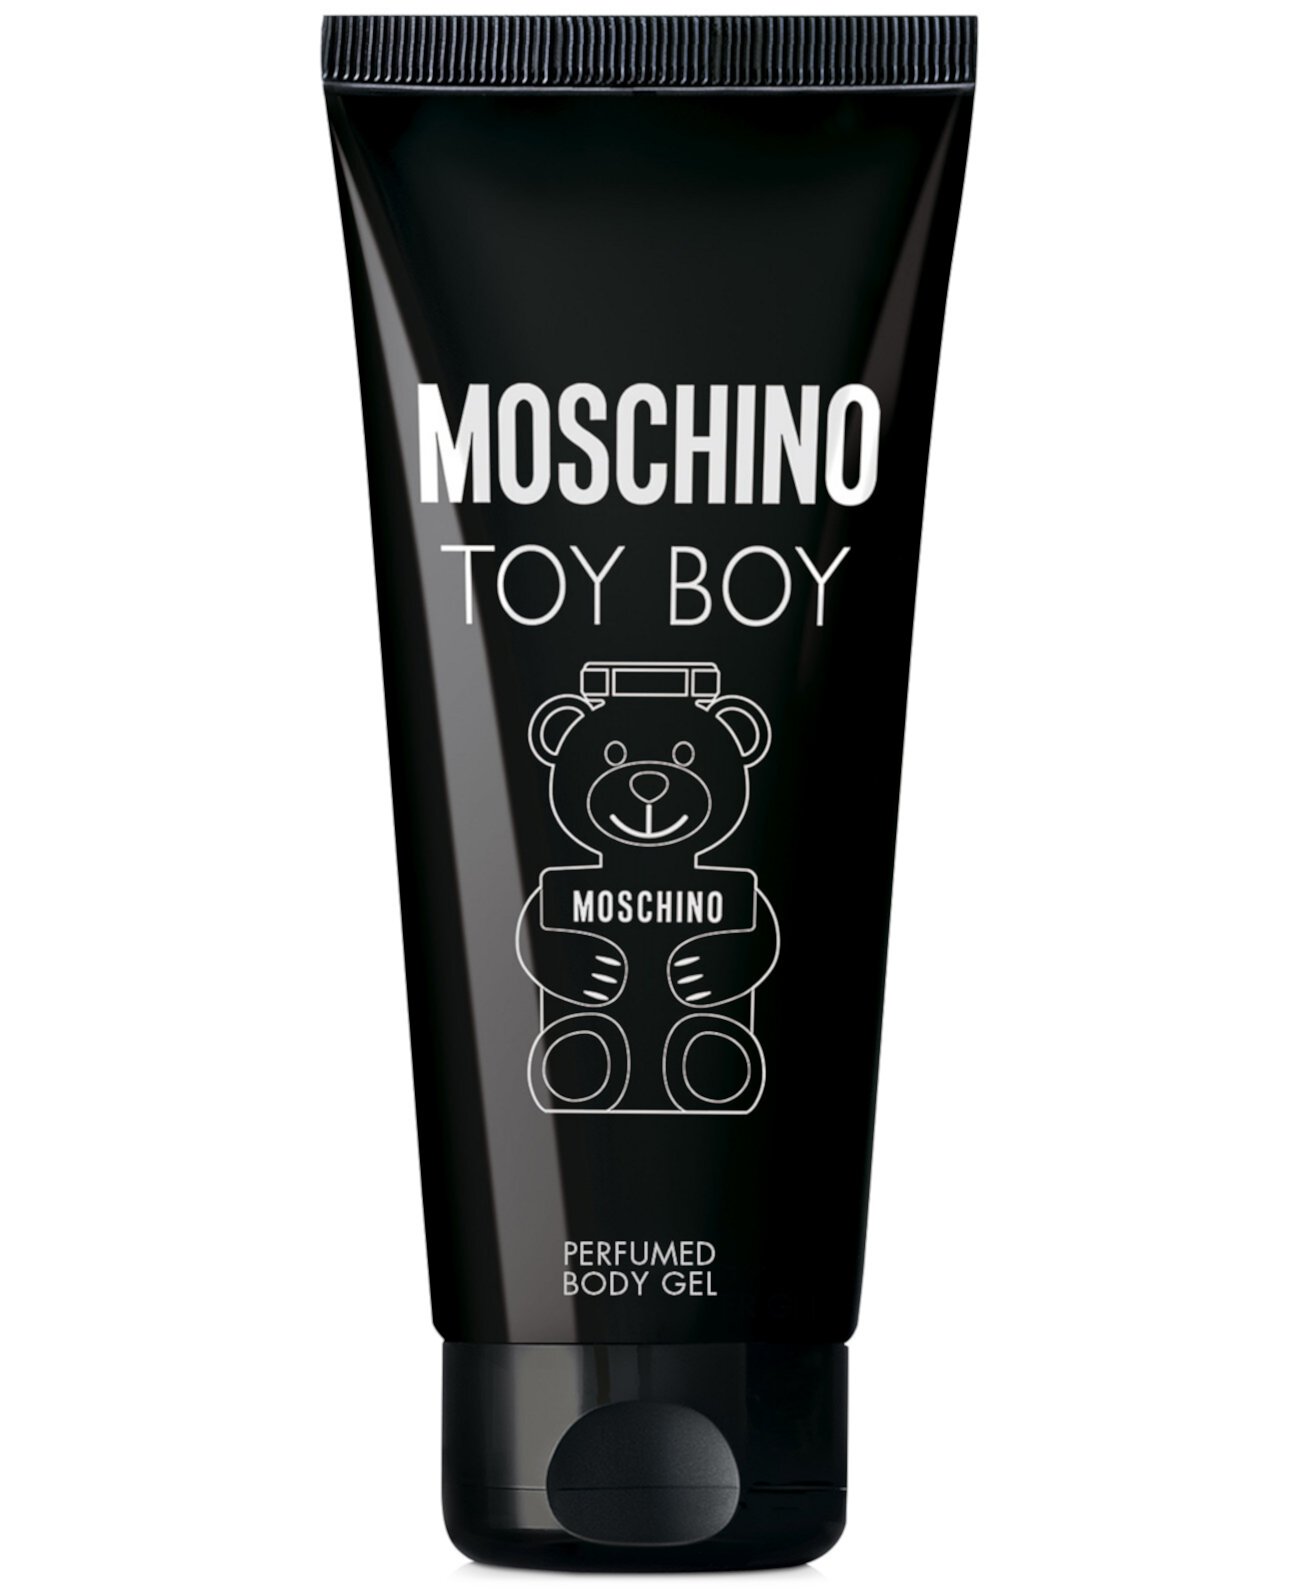 Мужской гель для тела Toy Boy, 6,7 унций. Moschino